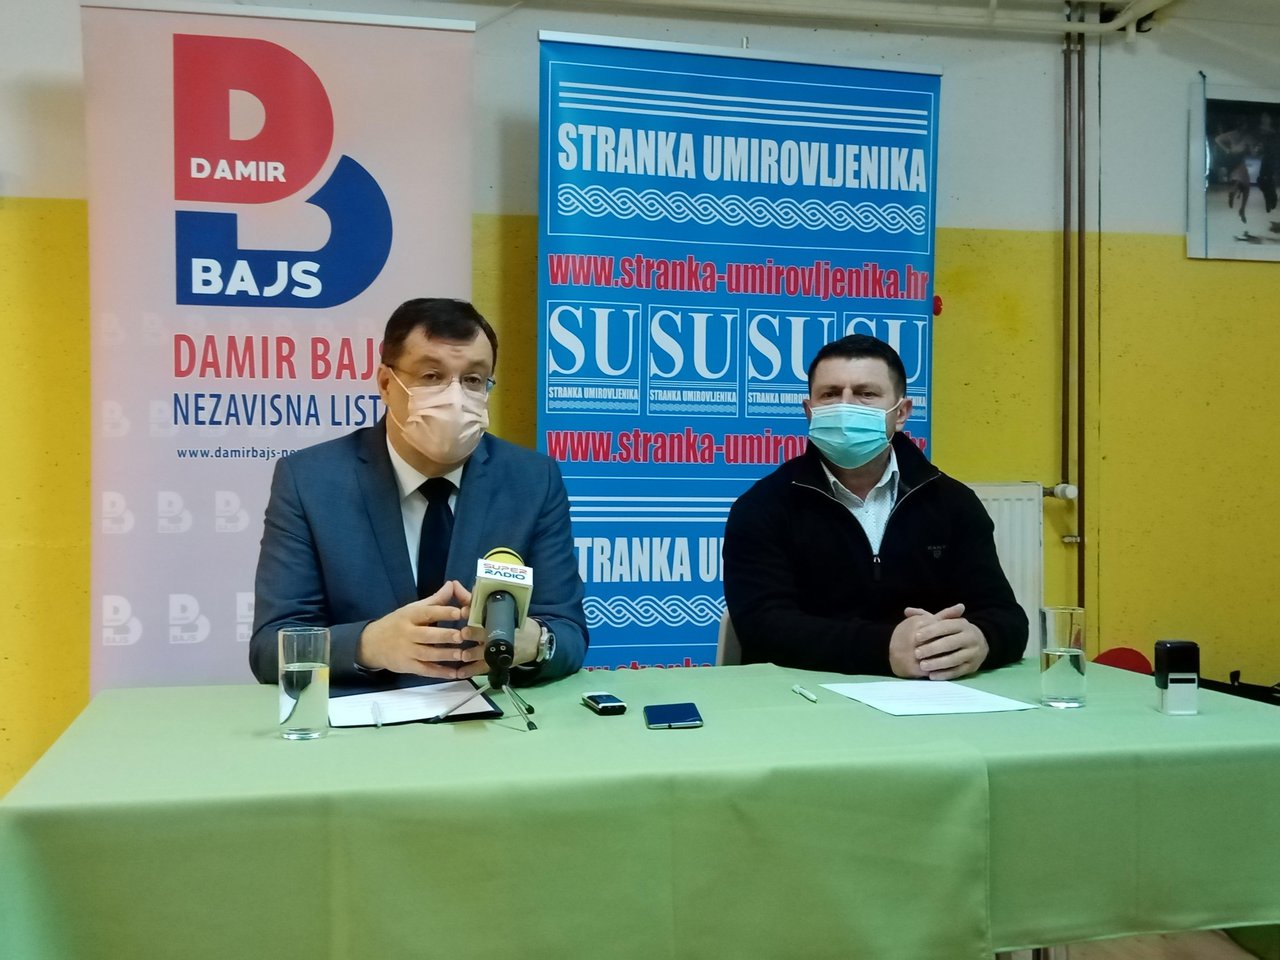 Fotografija: Bjelovarsko-bilogorski župan Damir Bajs i Željko Held, predsjednik ŽO Stranke umirovljenika/ Foto: Deni Marčinković